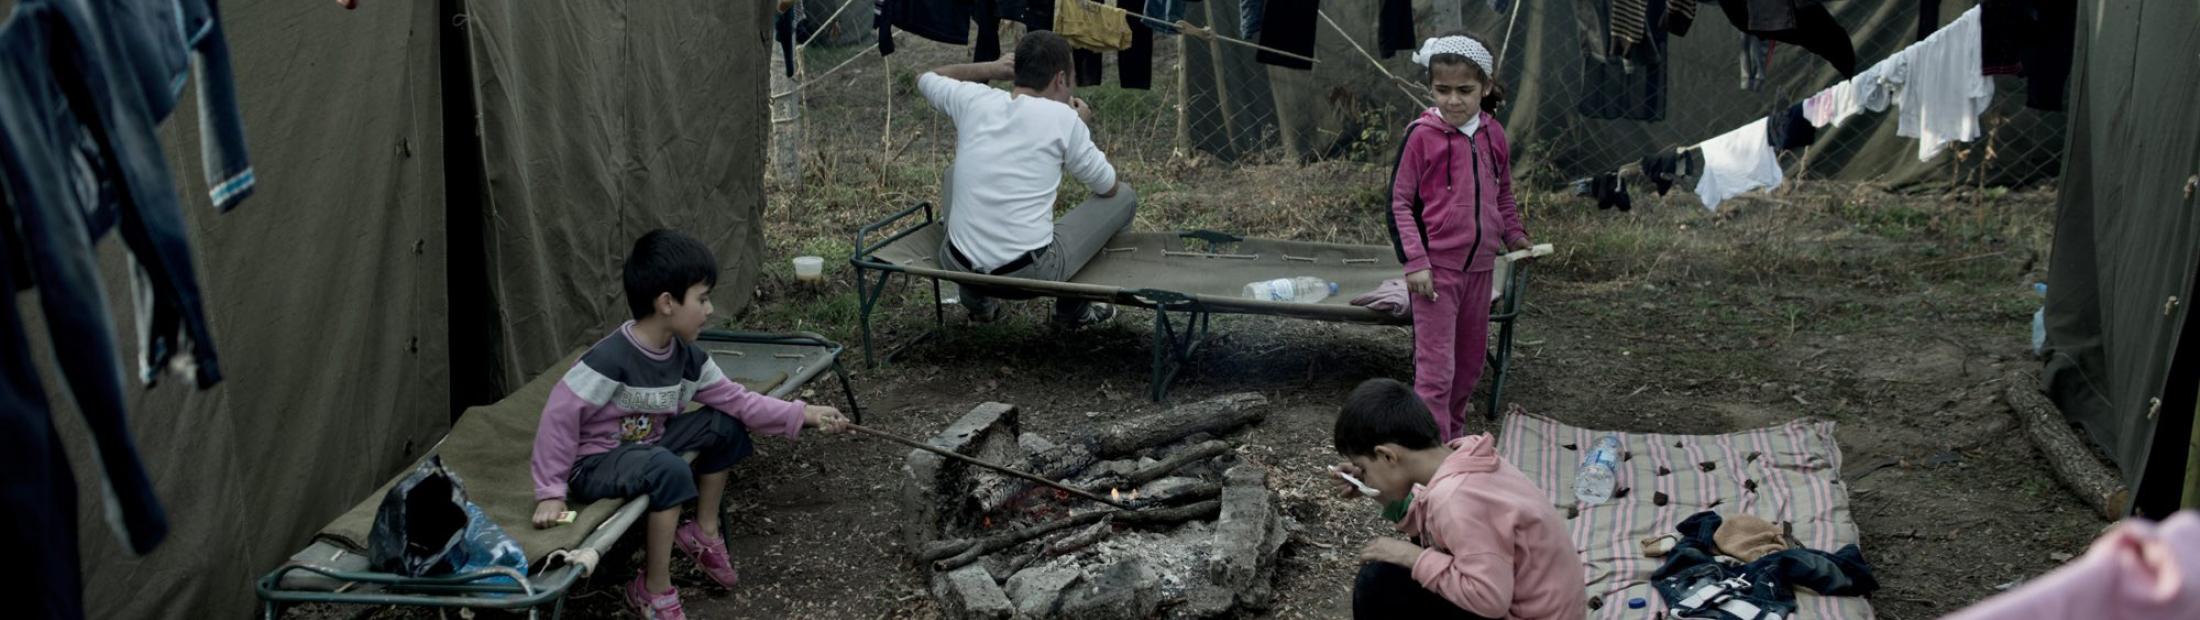 ACNUR trabaja para mejorar las condiciones de los refugiados en Bulgaria